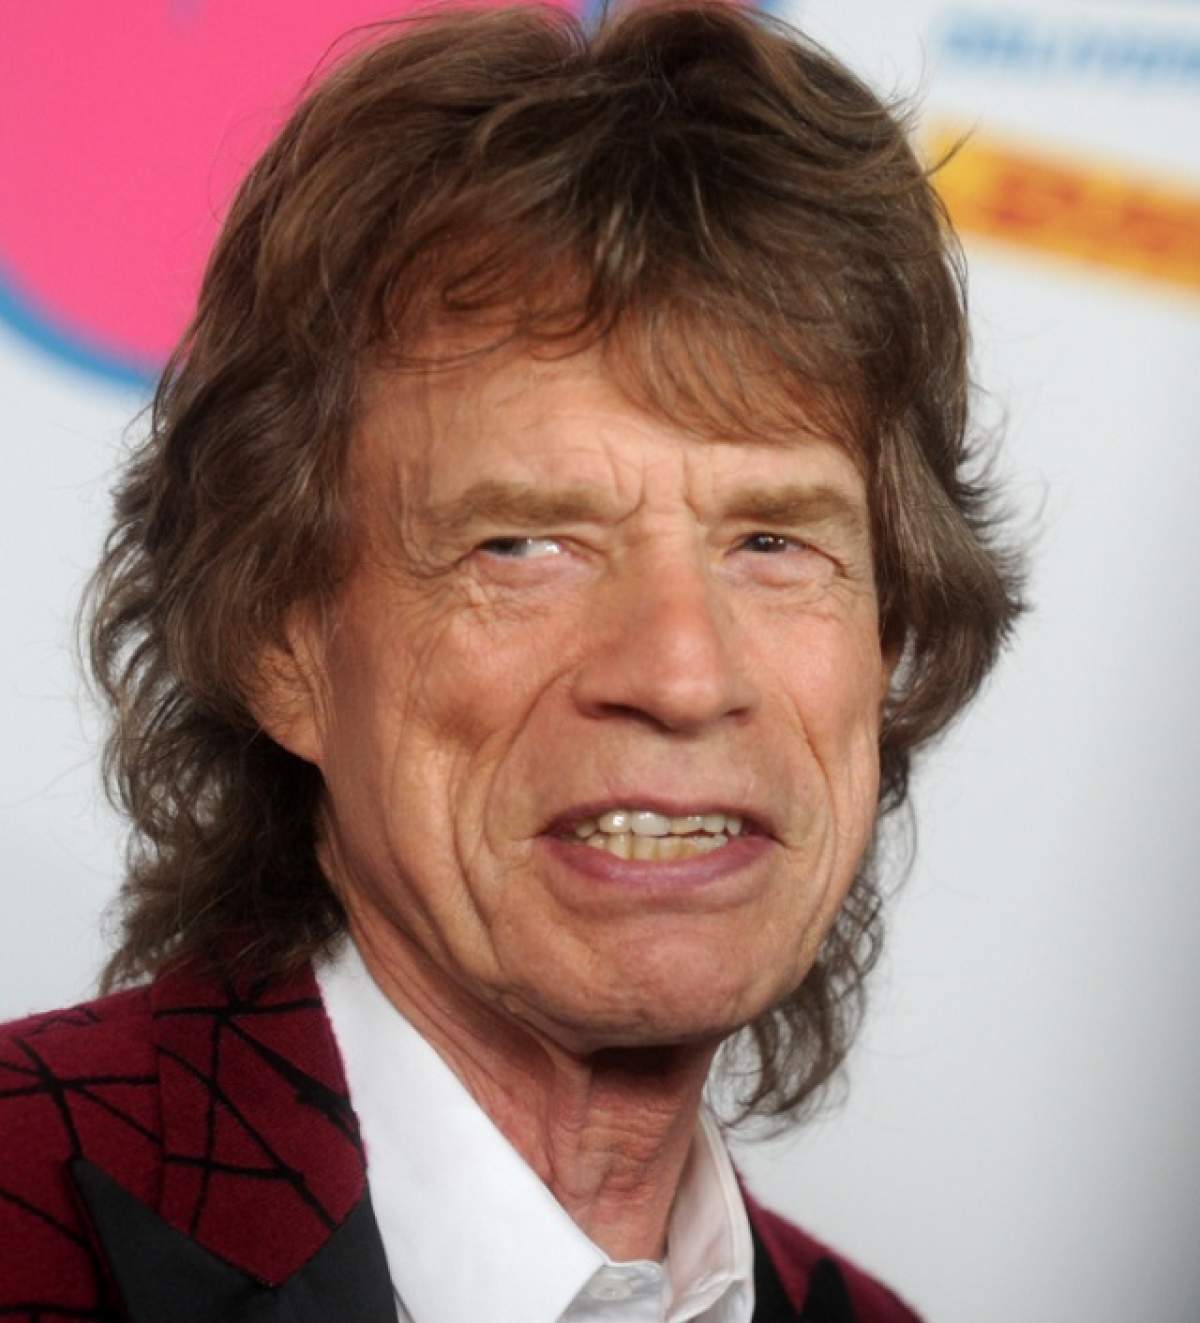 Mick Jagger a devenit tată la 73 de ani! Este în acelaşi timp şi bunic, şi străbunic